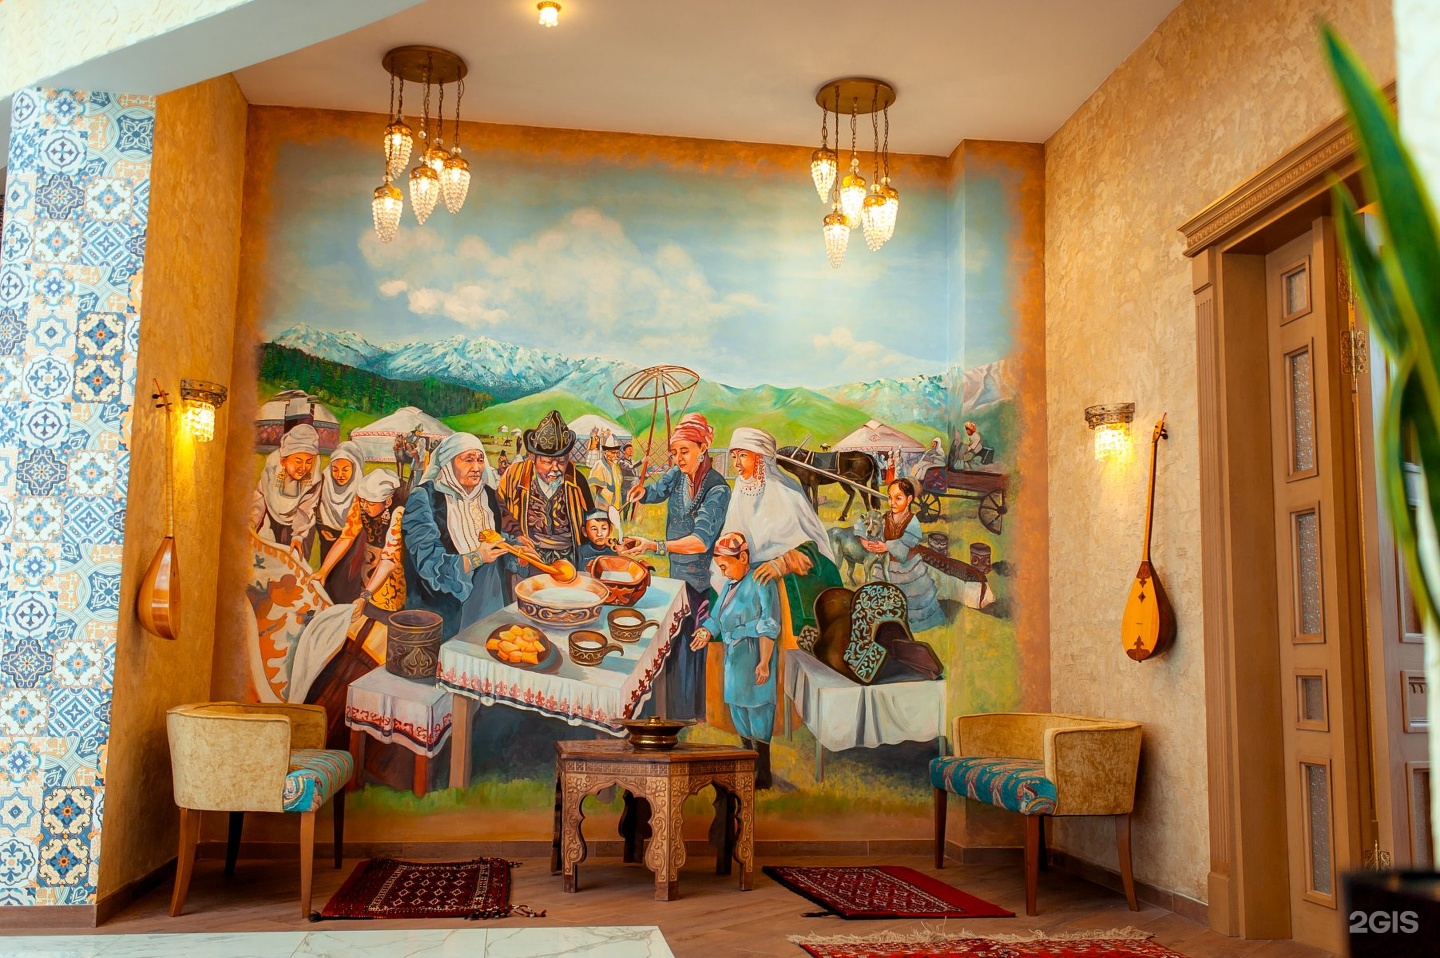 Национальный казахский ресторан Abay. Abay ресторан. Ресторан национальной кухни «АК ауыл». Национальный ресторан. Ресторан казахской кухни